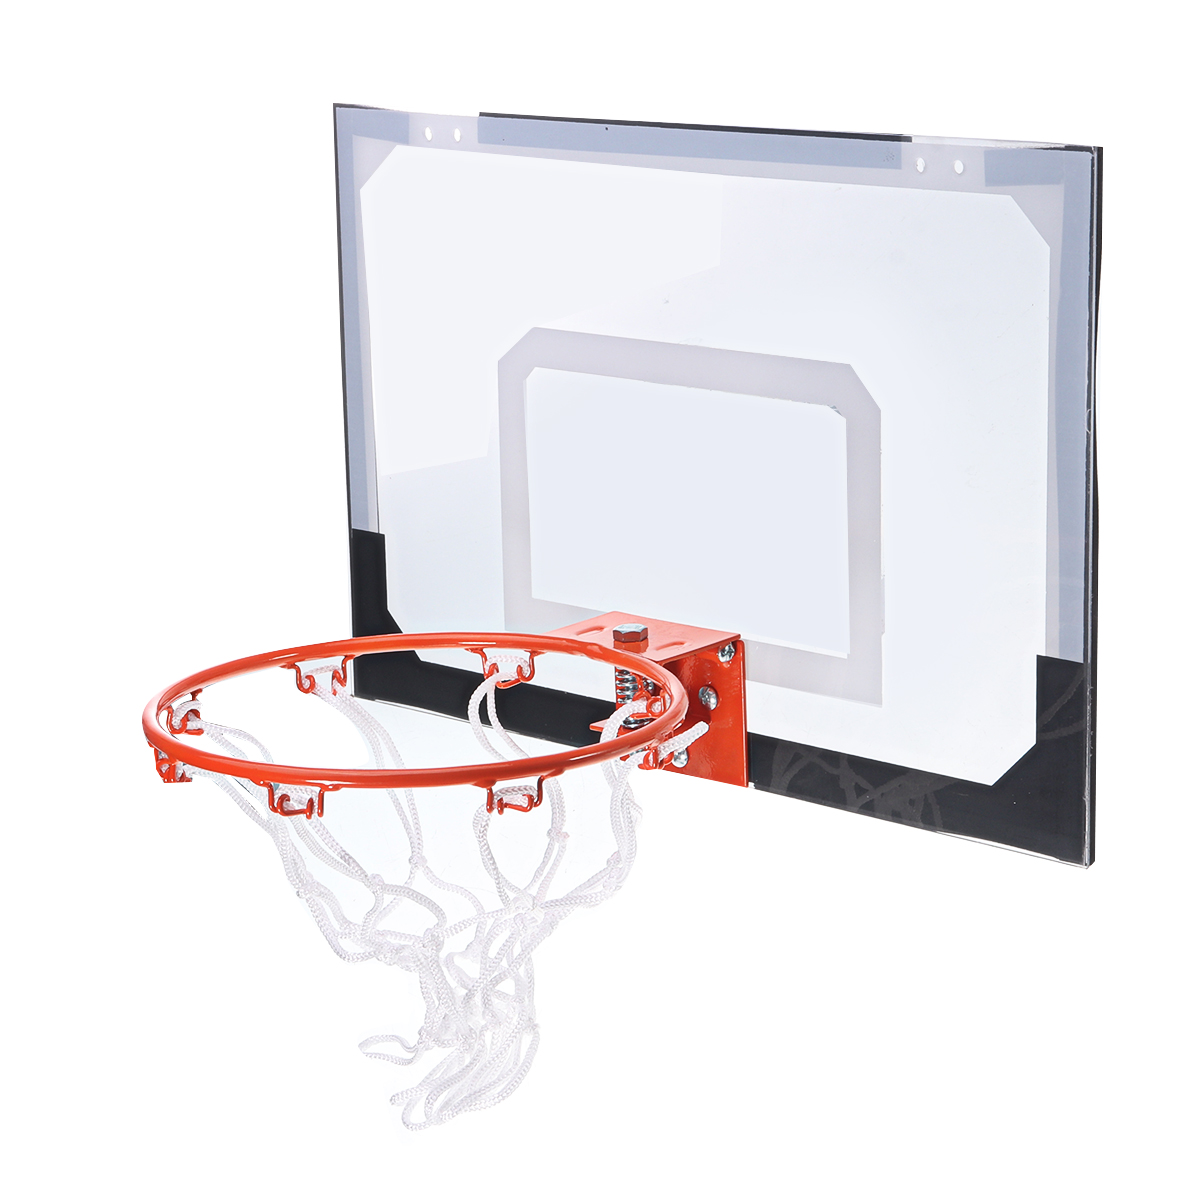 Adult-Indoor-Mini-Basketball-Hoop-Backboard-System-Home-Office-Room-Door-Mount-With-Ball--Pump-Sport-1706638-5